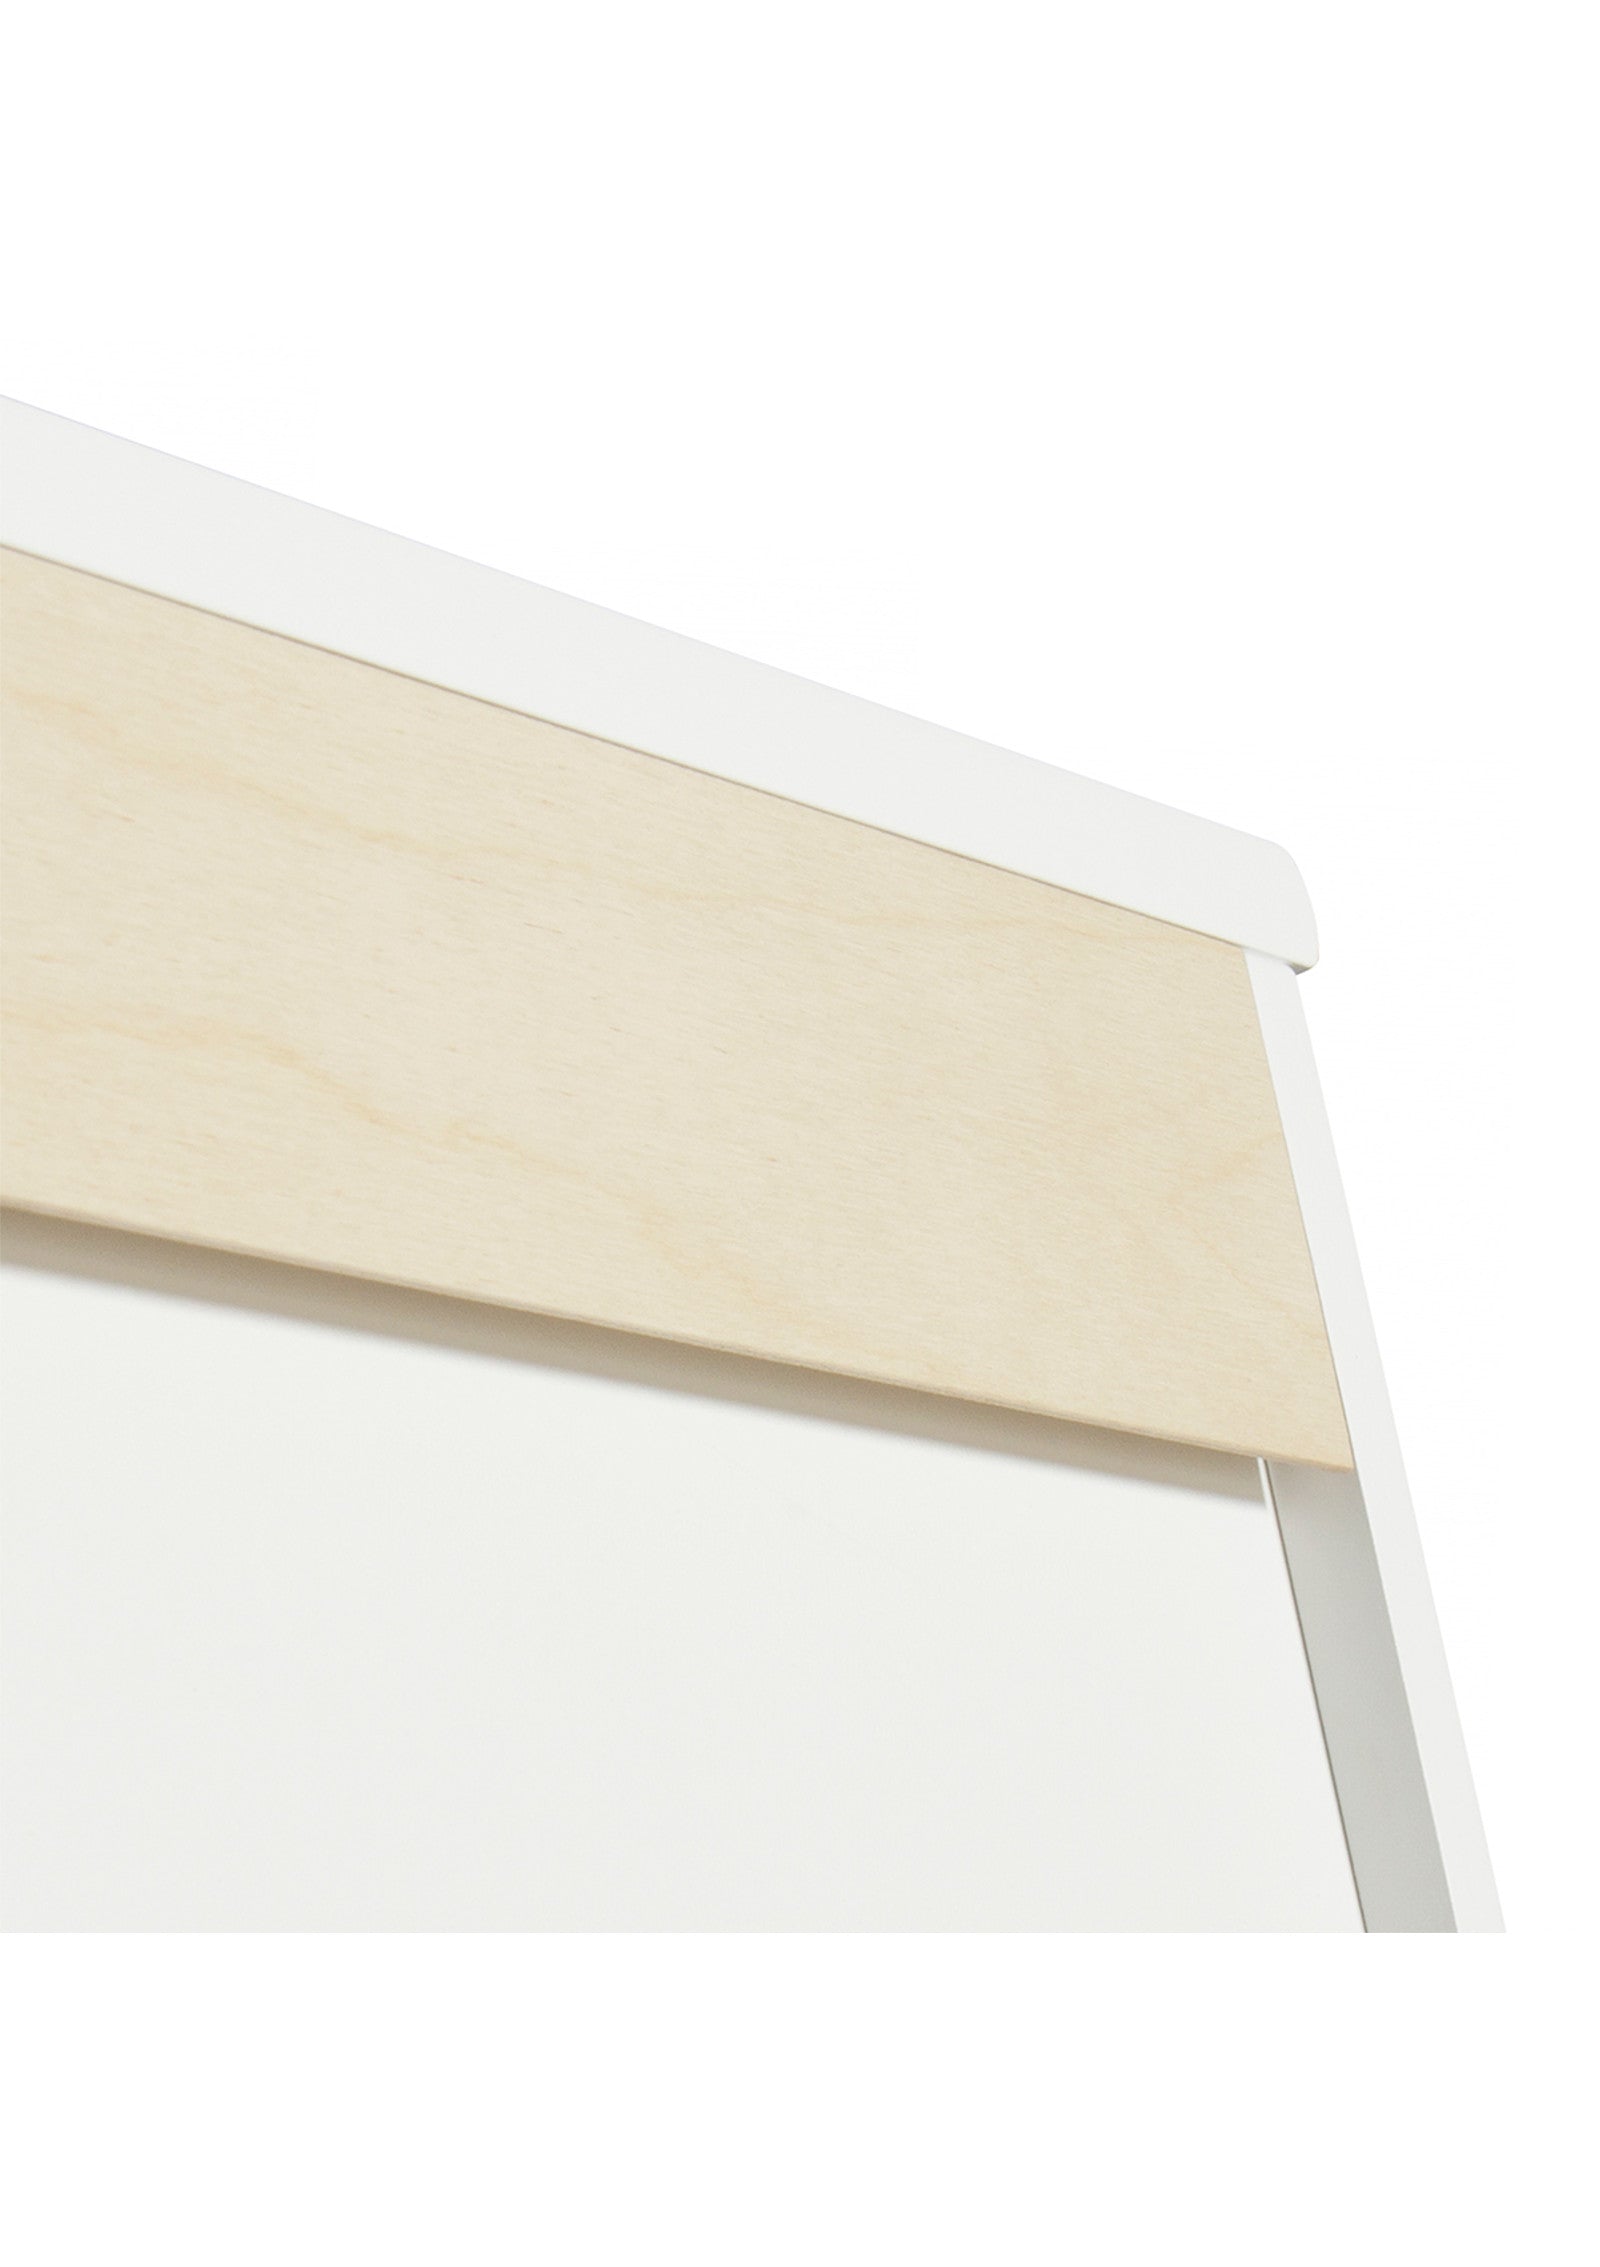 'Wood' Regal horizontal 3 x 2 / weiß zum Aufhängen